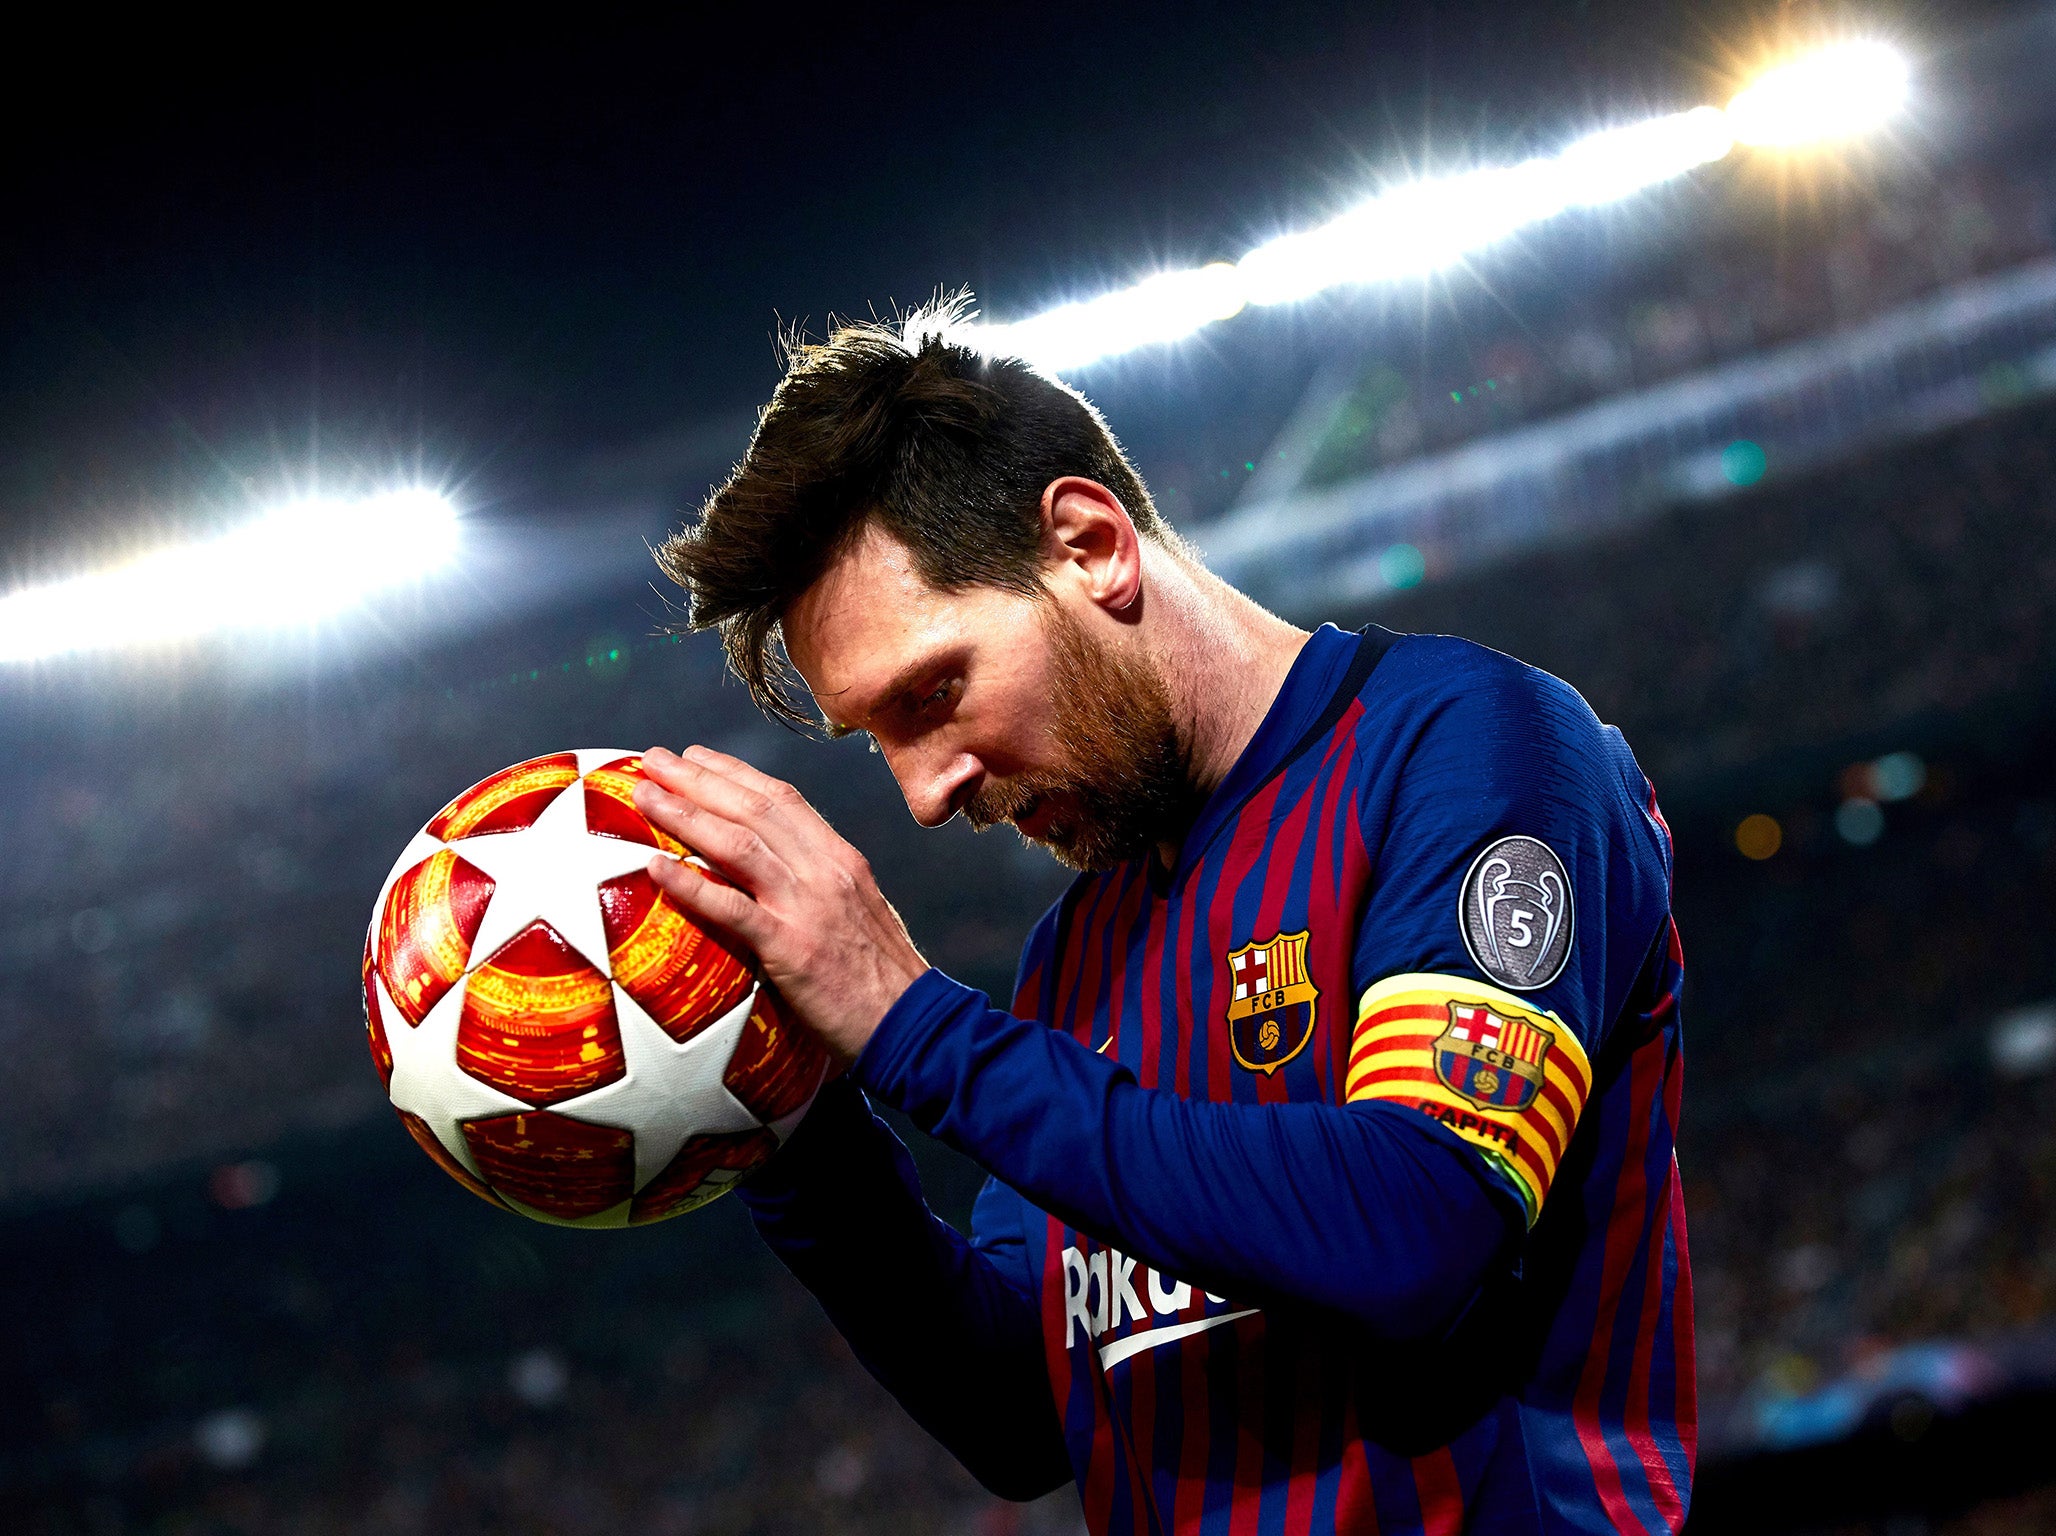 10 bức ảnh được yêu thích nhất Instagram năm 2022 Messi được gọi tên nhưng  trùm cuối mới quyền lực nhất